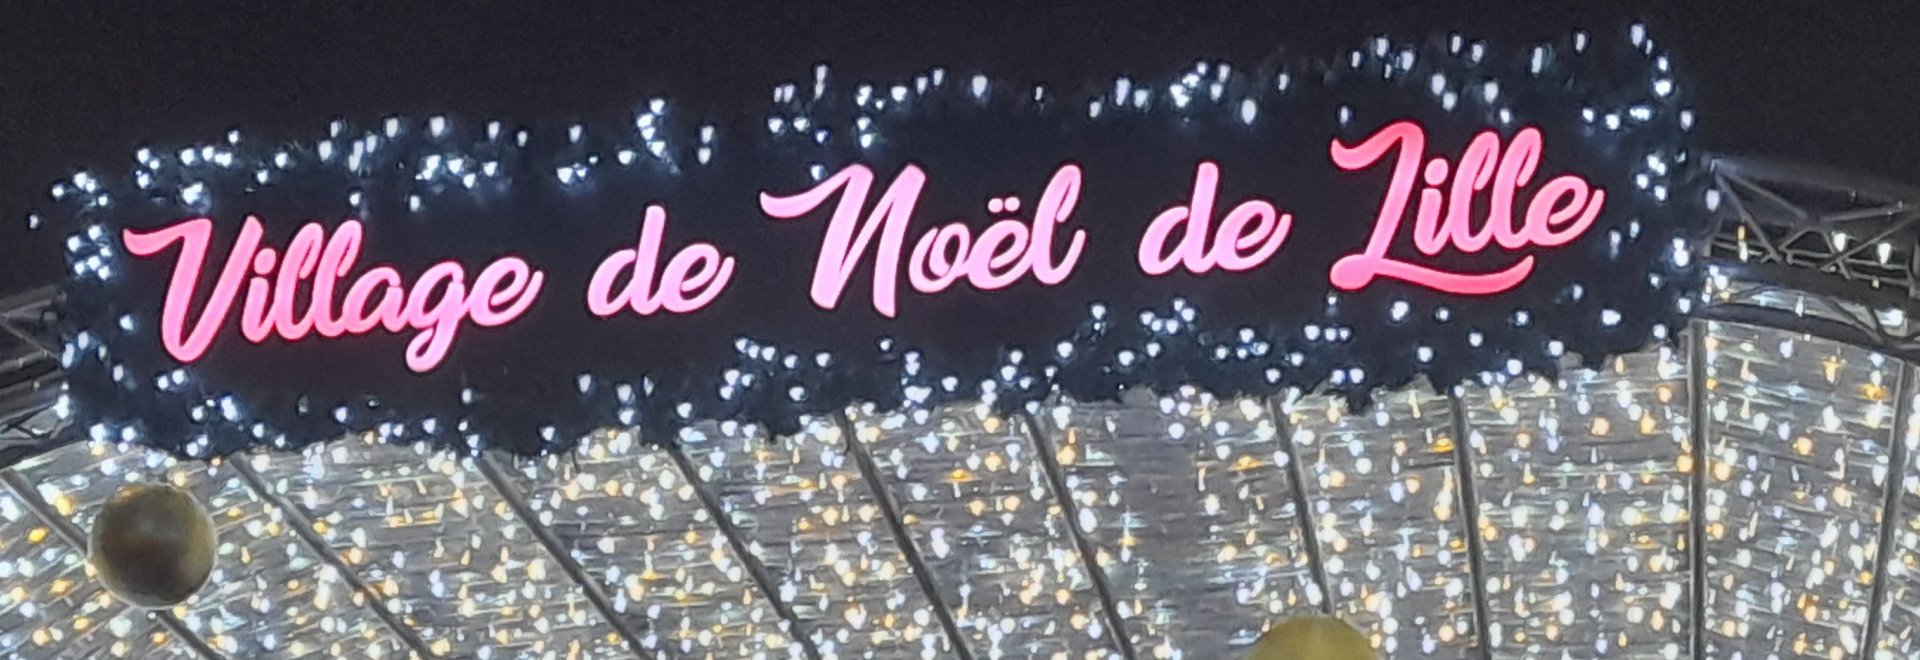 Visuel "Village de Noel de Lille", photo de l'arche d'accueil du marché de Noel